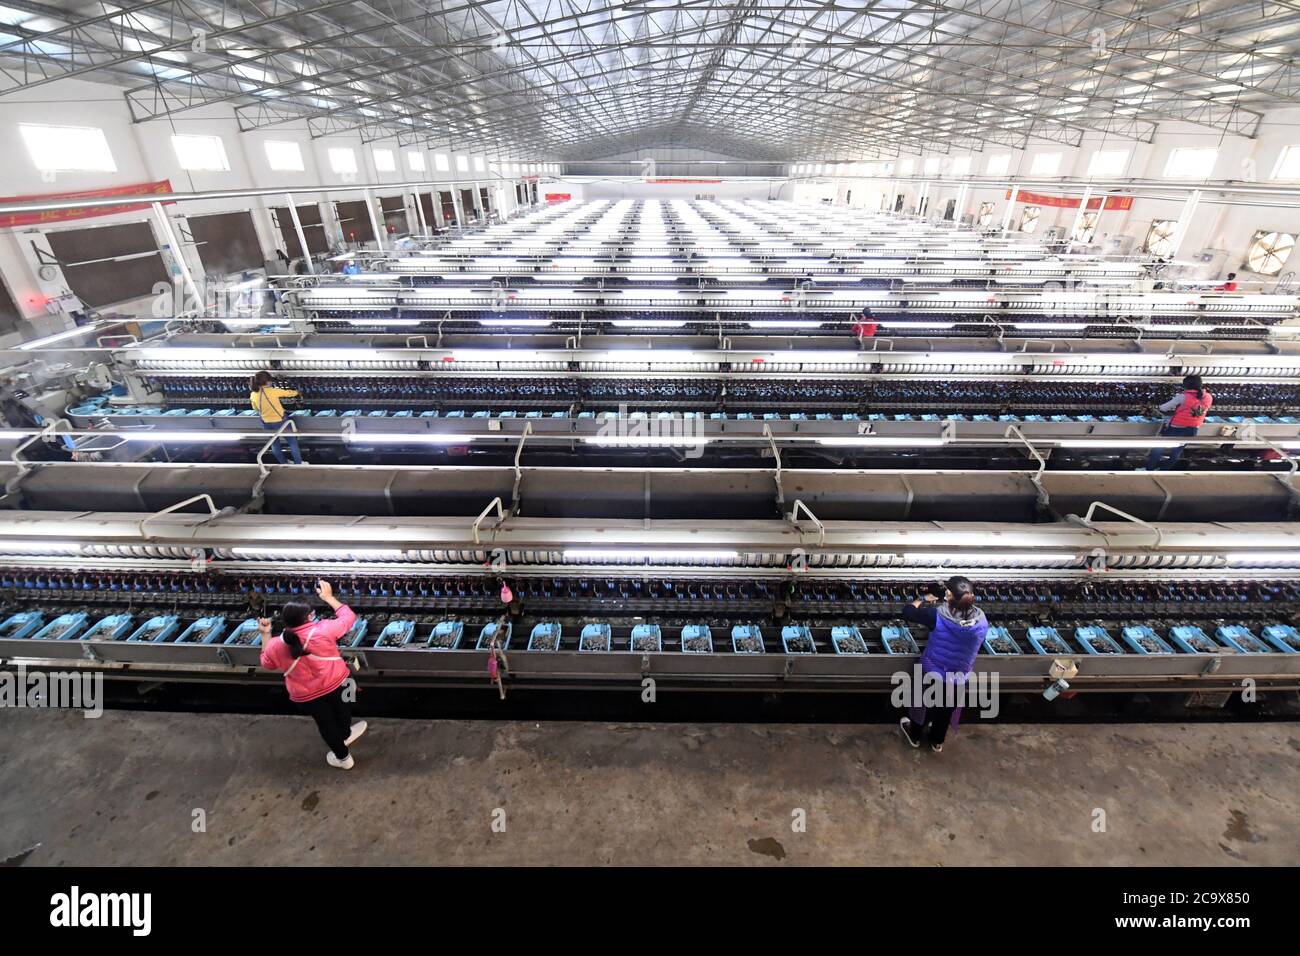 (200803) -- NANNING, 3 agosto 2020 (Xinhua) -- i dipendenti lavorano in un'impresa di produzione di seta nella contea di Xincheng, regione autonoma di Guangxi Zhuang nella Cina meridionale, 31 marzo 2020. Guangxi, una regione chiave della missione di soccorso della povertà in Cina, sta compiendo sforzi incessanti per vincere la dura battaglia contro la povertà assicurando l’occupazione della popolazione povera. Cercare di far lavorare le persone ha svolto un ruolo vitale nella grande campagna di Guangxi per combattere la povertà, in quanto può far uscire tutta la famiglia dalla povertà. Si è dimostrato il modo più efficace e diretto per contribuire a combattere la povertà. Inoltre, io Foto Stock